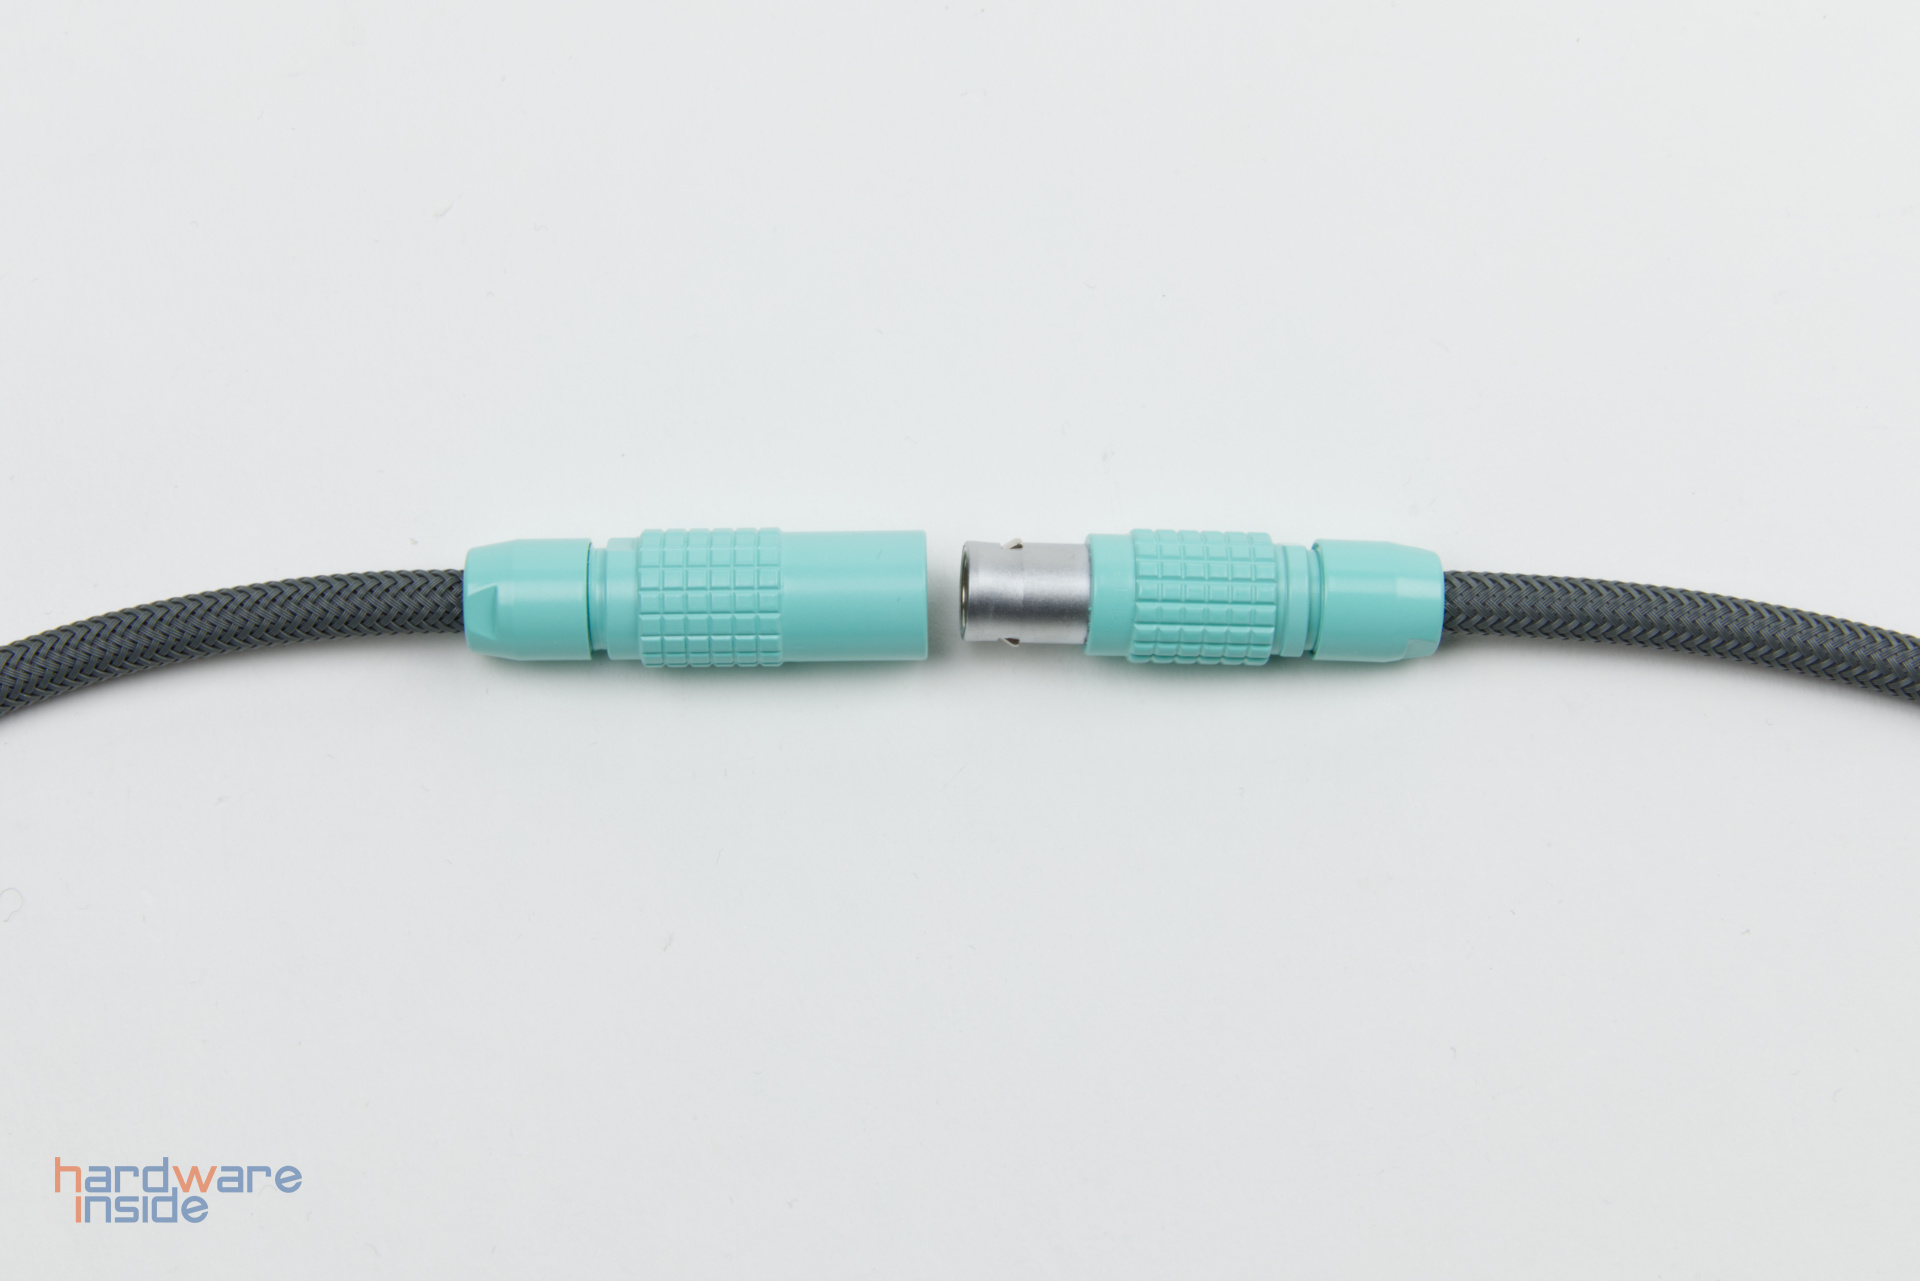 Keebstuff-Kabelmanufaktur-Mechanical-Keyboard-Cables-handcrafted-4.jpg